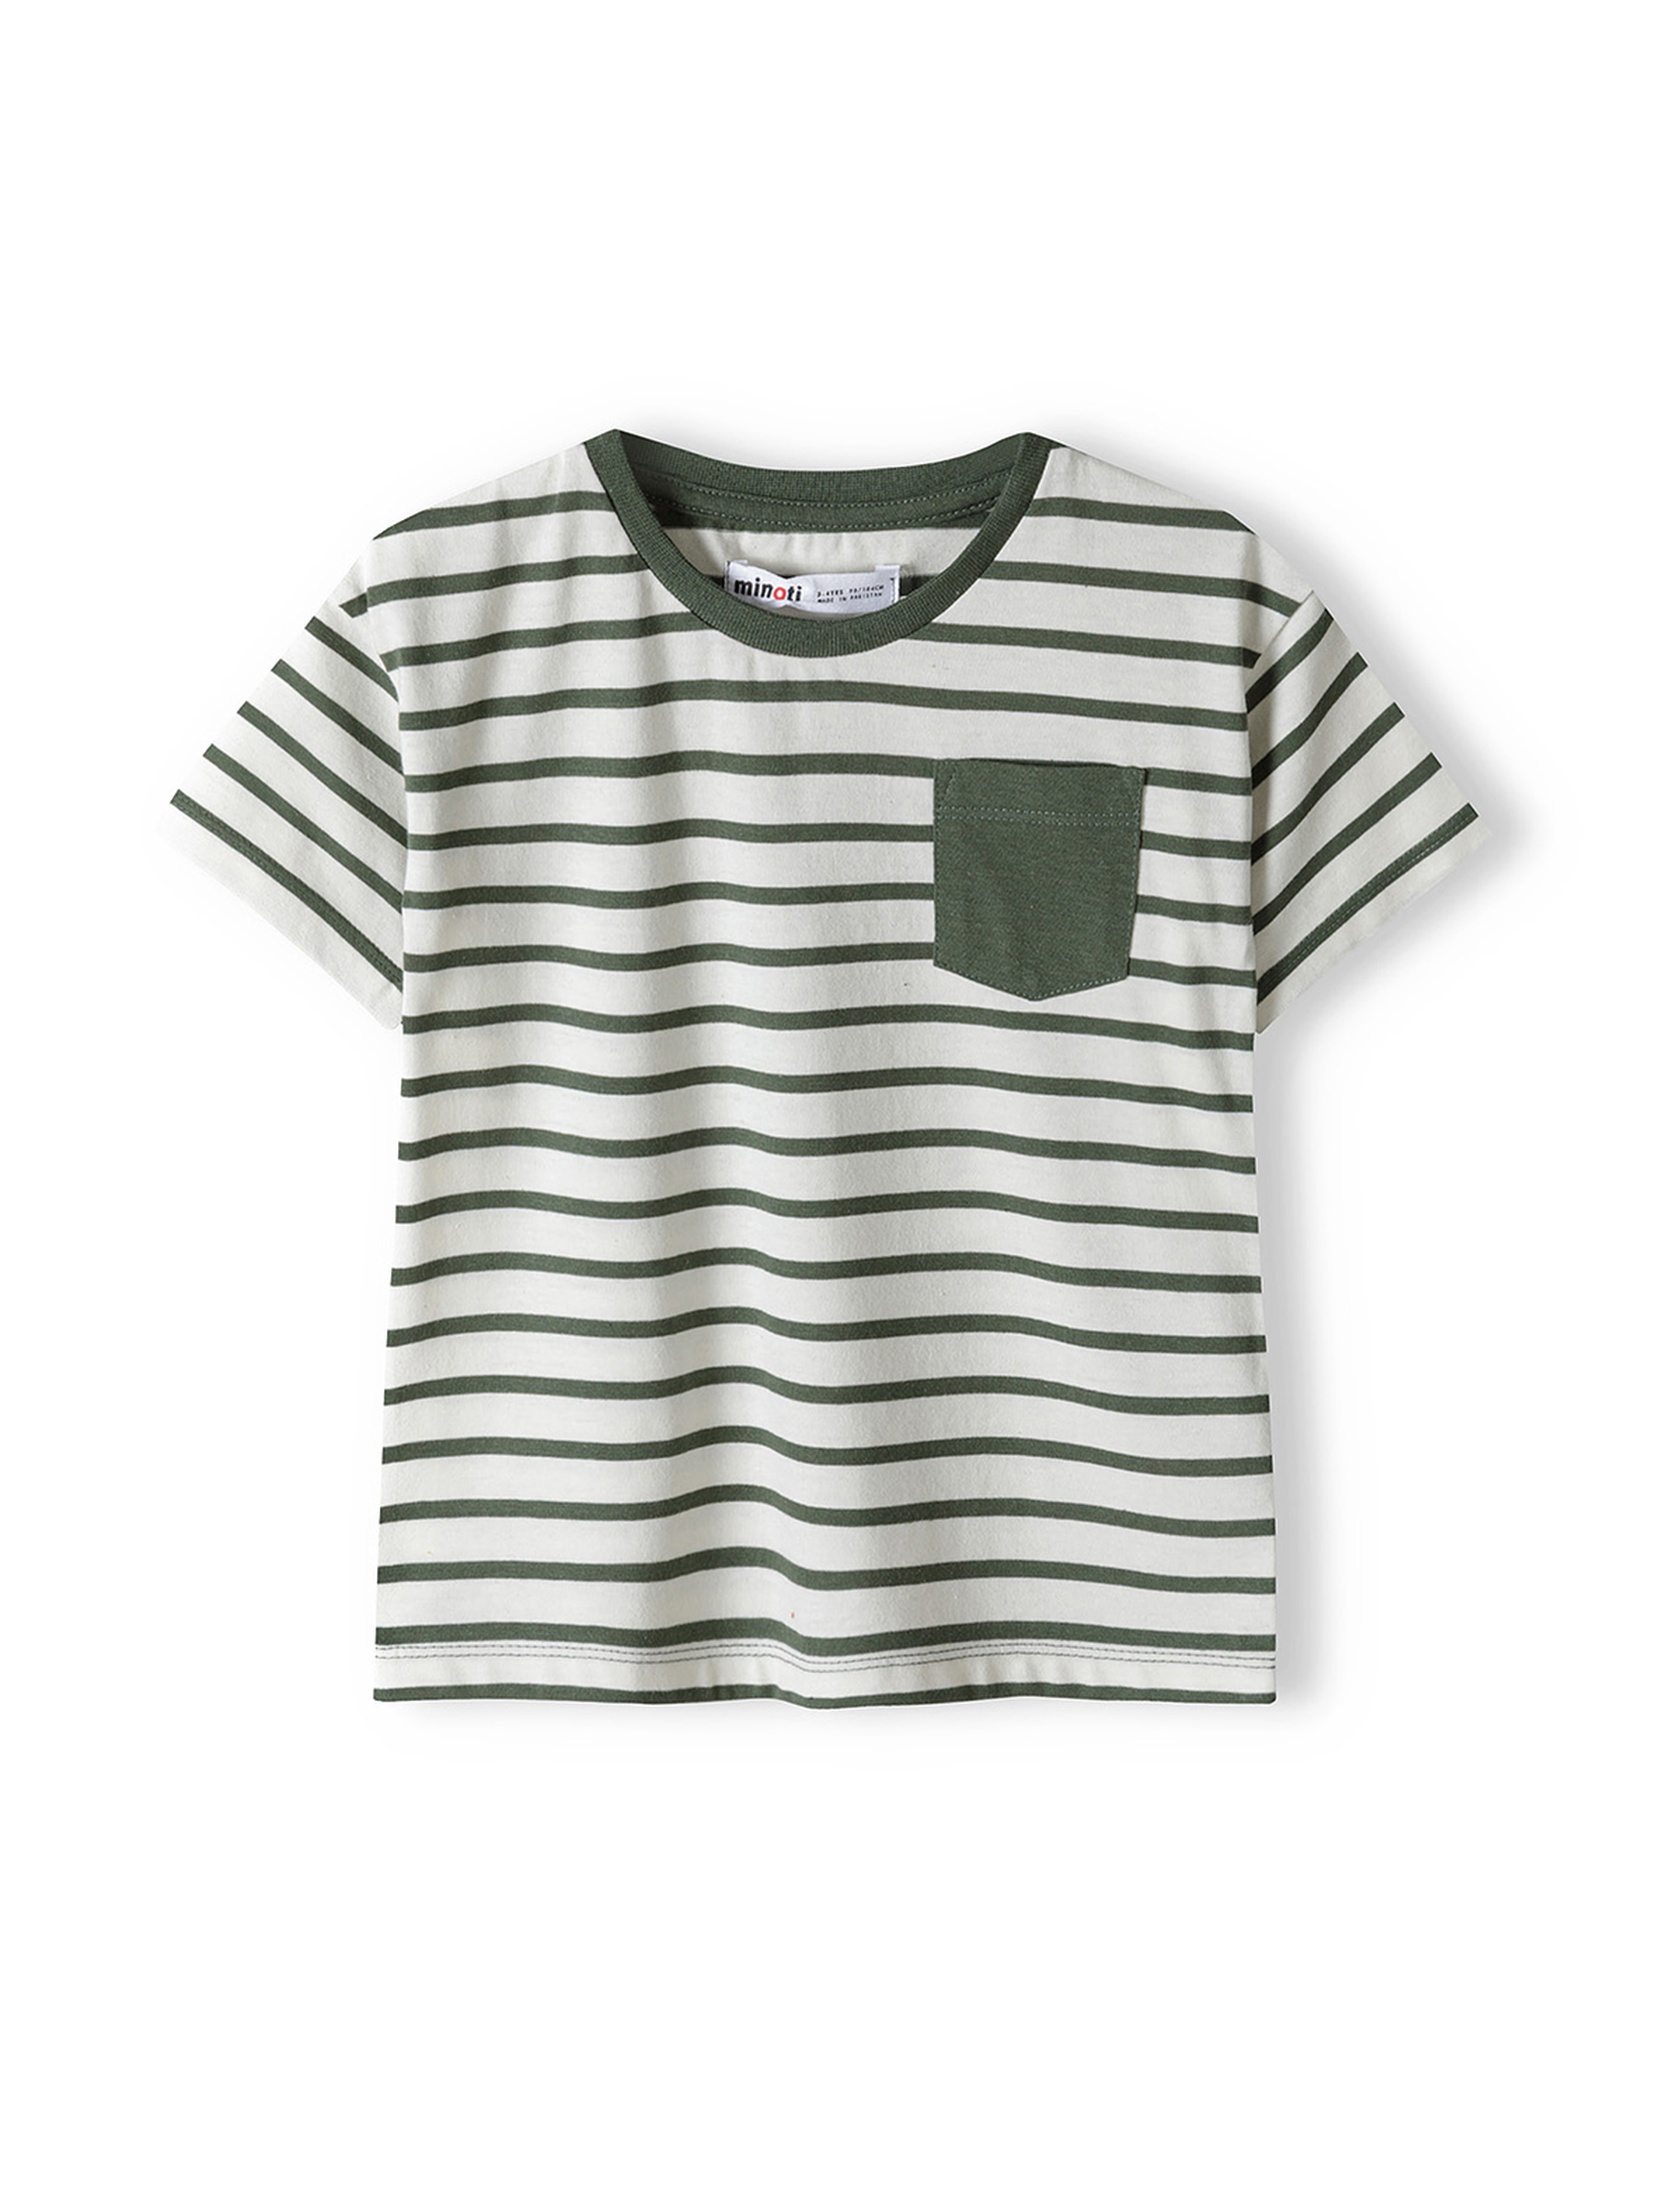 Komplet ubrań dla niemowlaka - t-shirt z bawełny + szorty dresowe